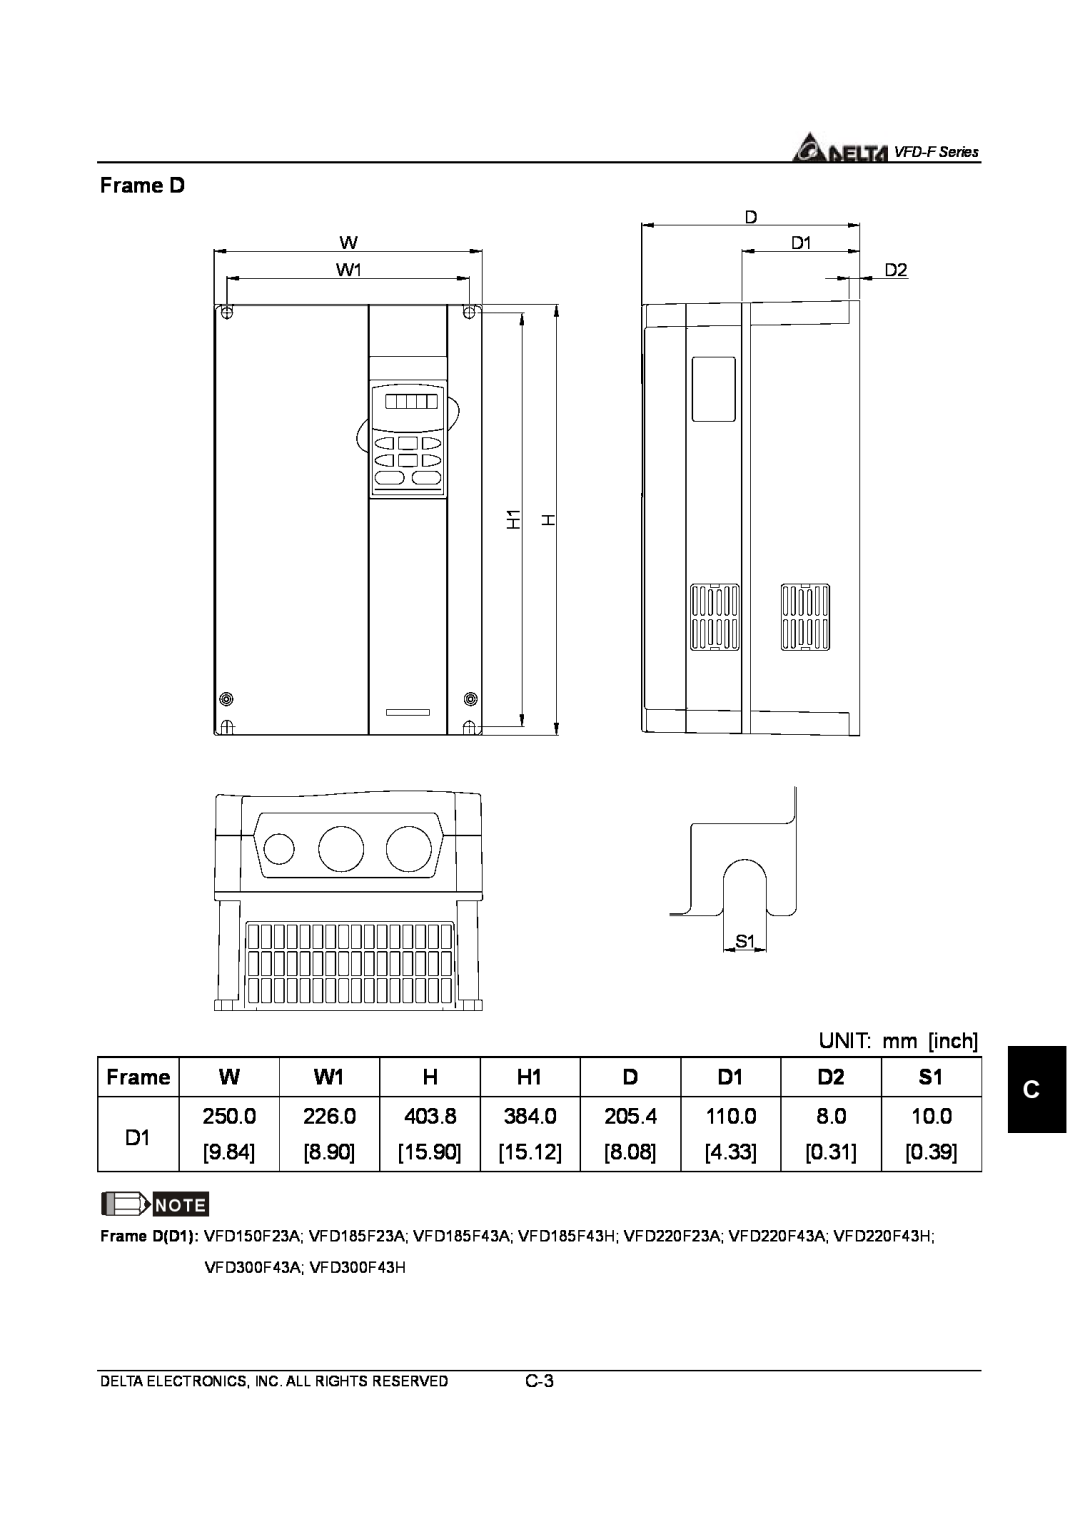 Delta Electronics VFD-F Series manual Frame D, VFD300F43A VFD300F43H 